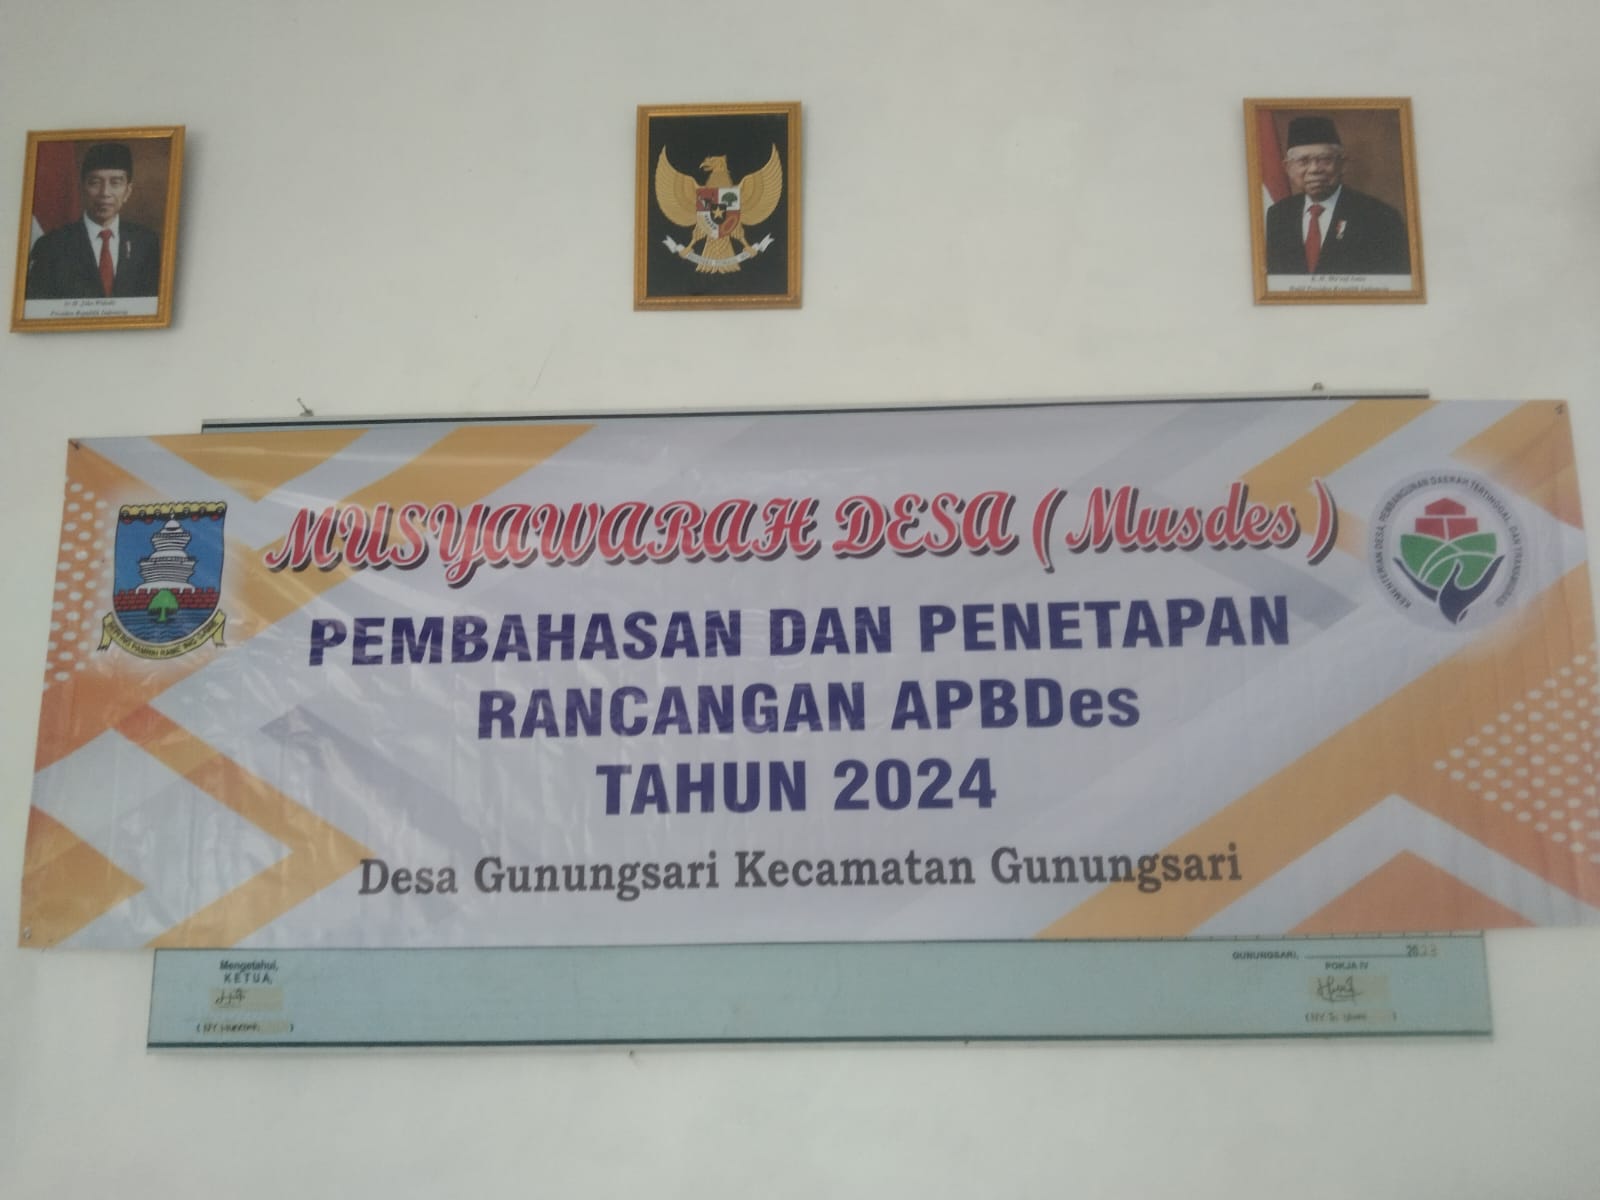 Musyawarah Desa (MUSDES) Pembahasan Dana Penetapan Rencana APBDes Pembangunan TAHUN 2024 Desa Gunungsari Kecamatan Gunungsari